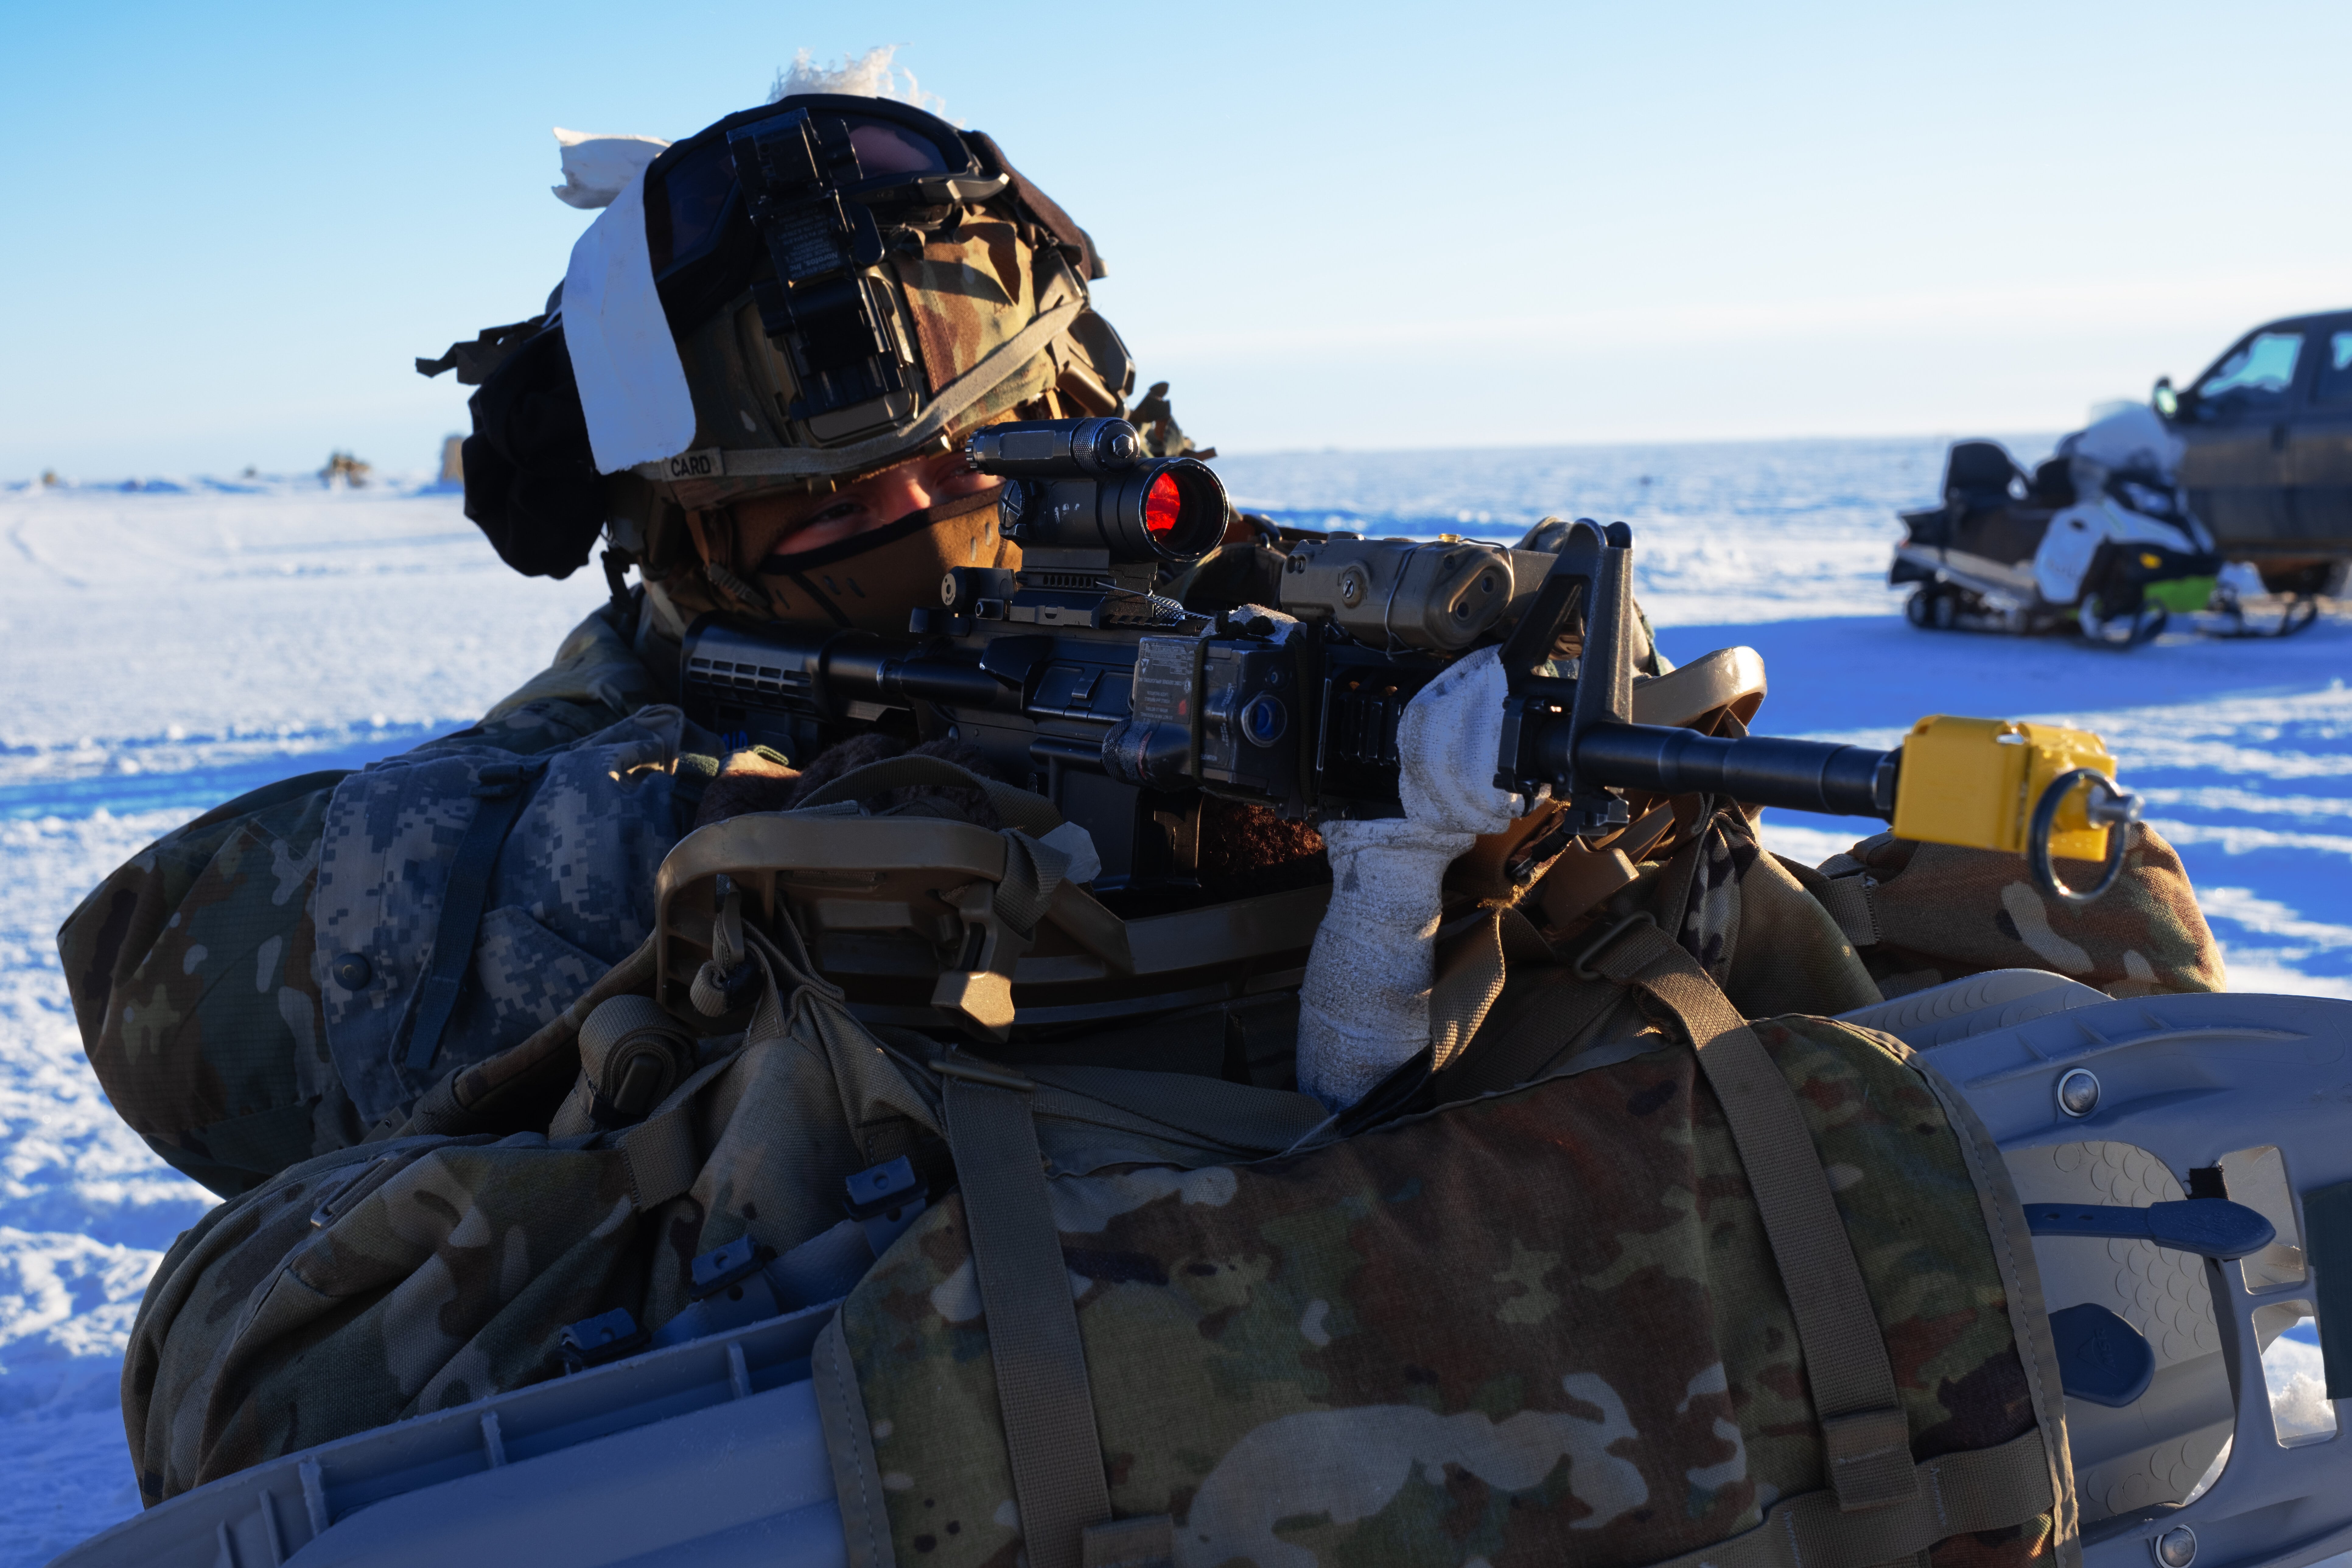 Soldaten der US-Armee, die dem 1st Infantry Brigade Combat Team der 11th Airborne Division zugeteilt sind, verteidigen ihr Ziel außerhalb von Utqiagvik, Alaska, im Rahmen des Joint Pacific Multinational Readiness Training Center 24-02, 15. Februar 2024.